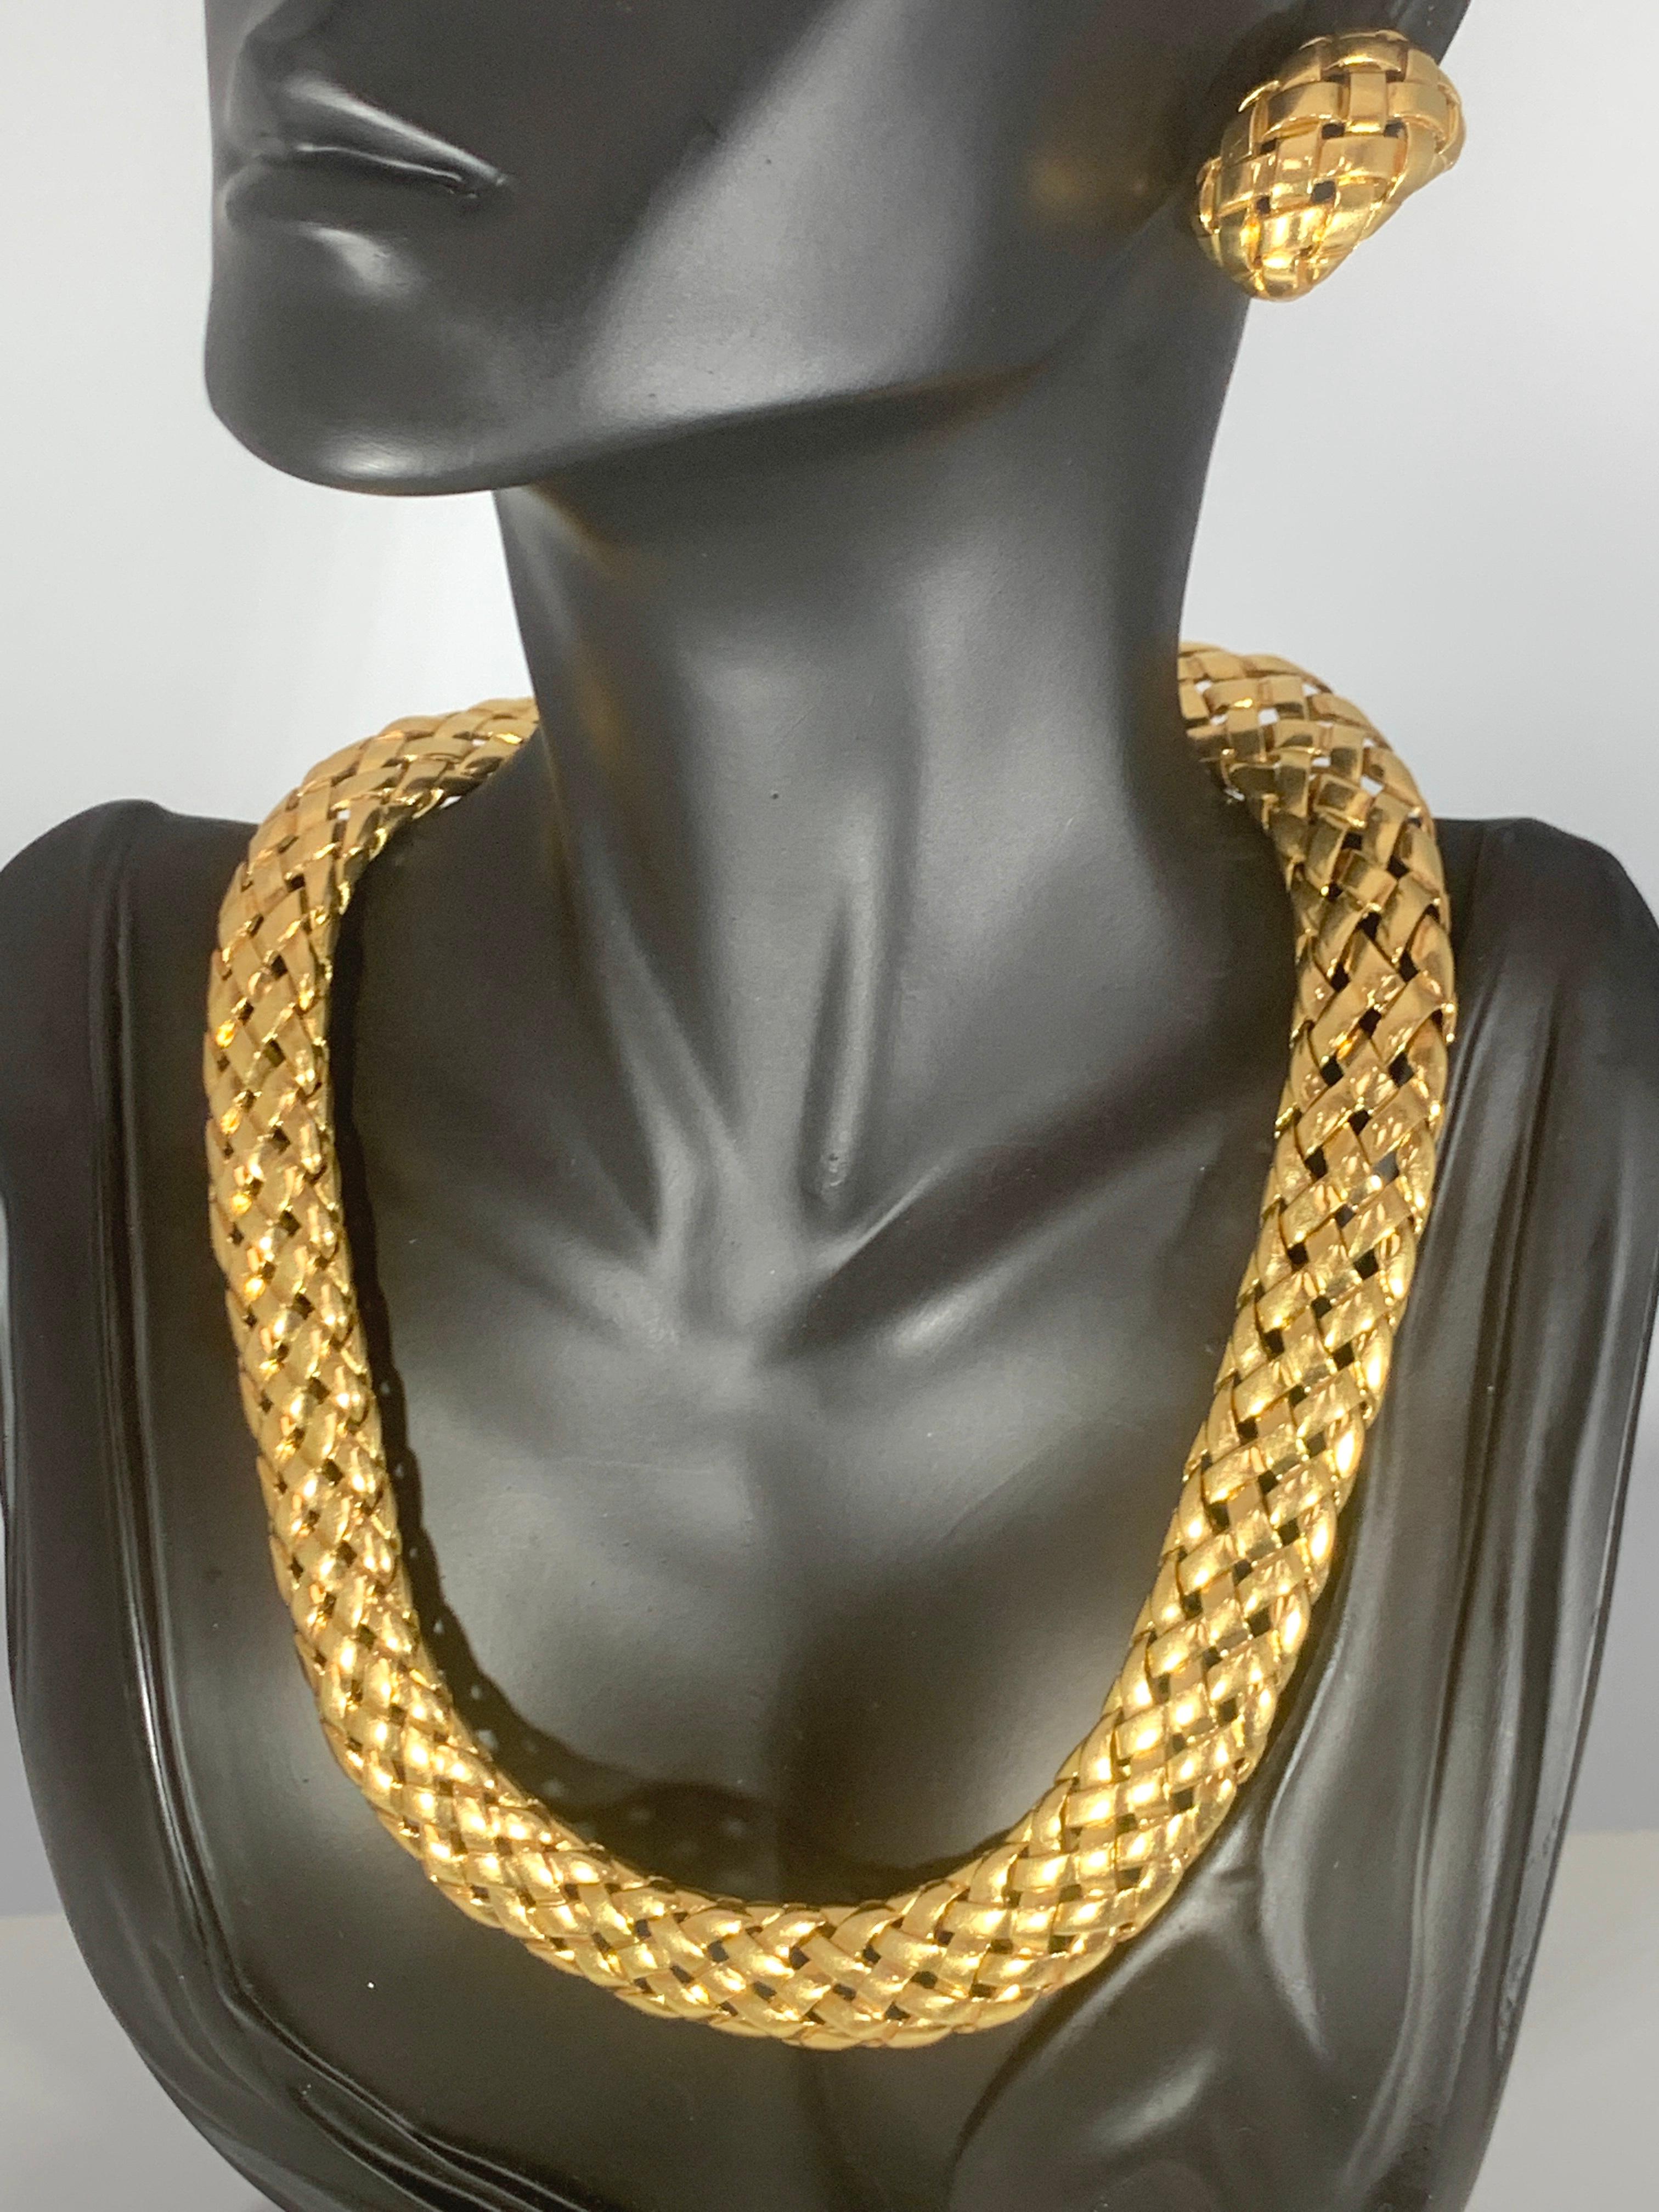 Van Cleef & Arpels Necklace and Earrings Bridal Suite 128 Grams 18k Gold, Estate 4